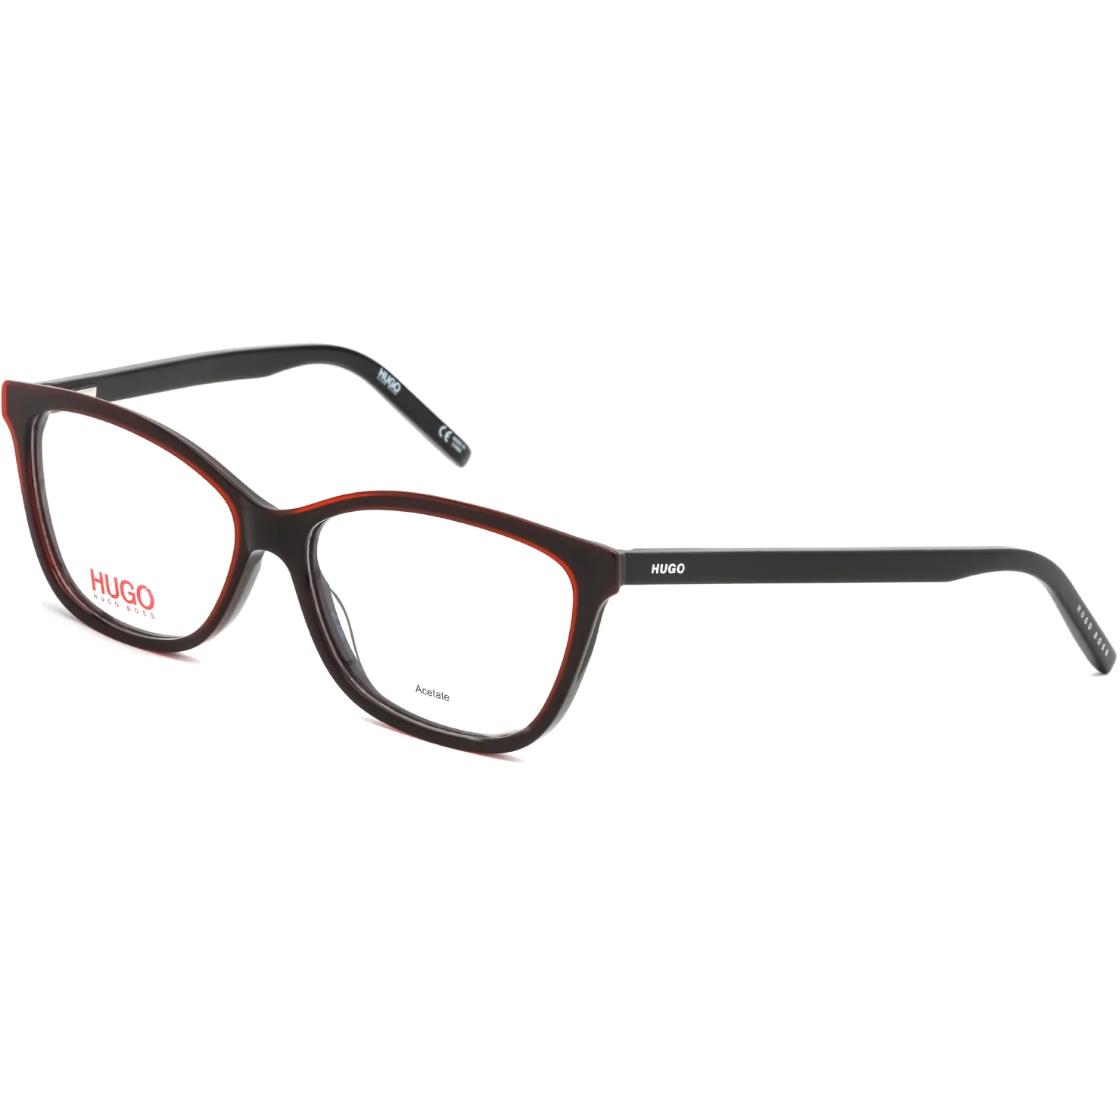 Hugo Boss Eyeglasses Optical Frames Demo Lens Black Redgd 1053 0OIT